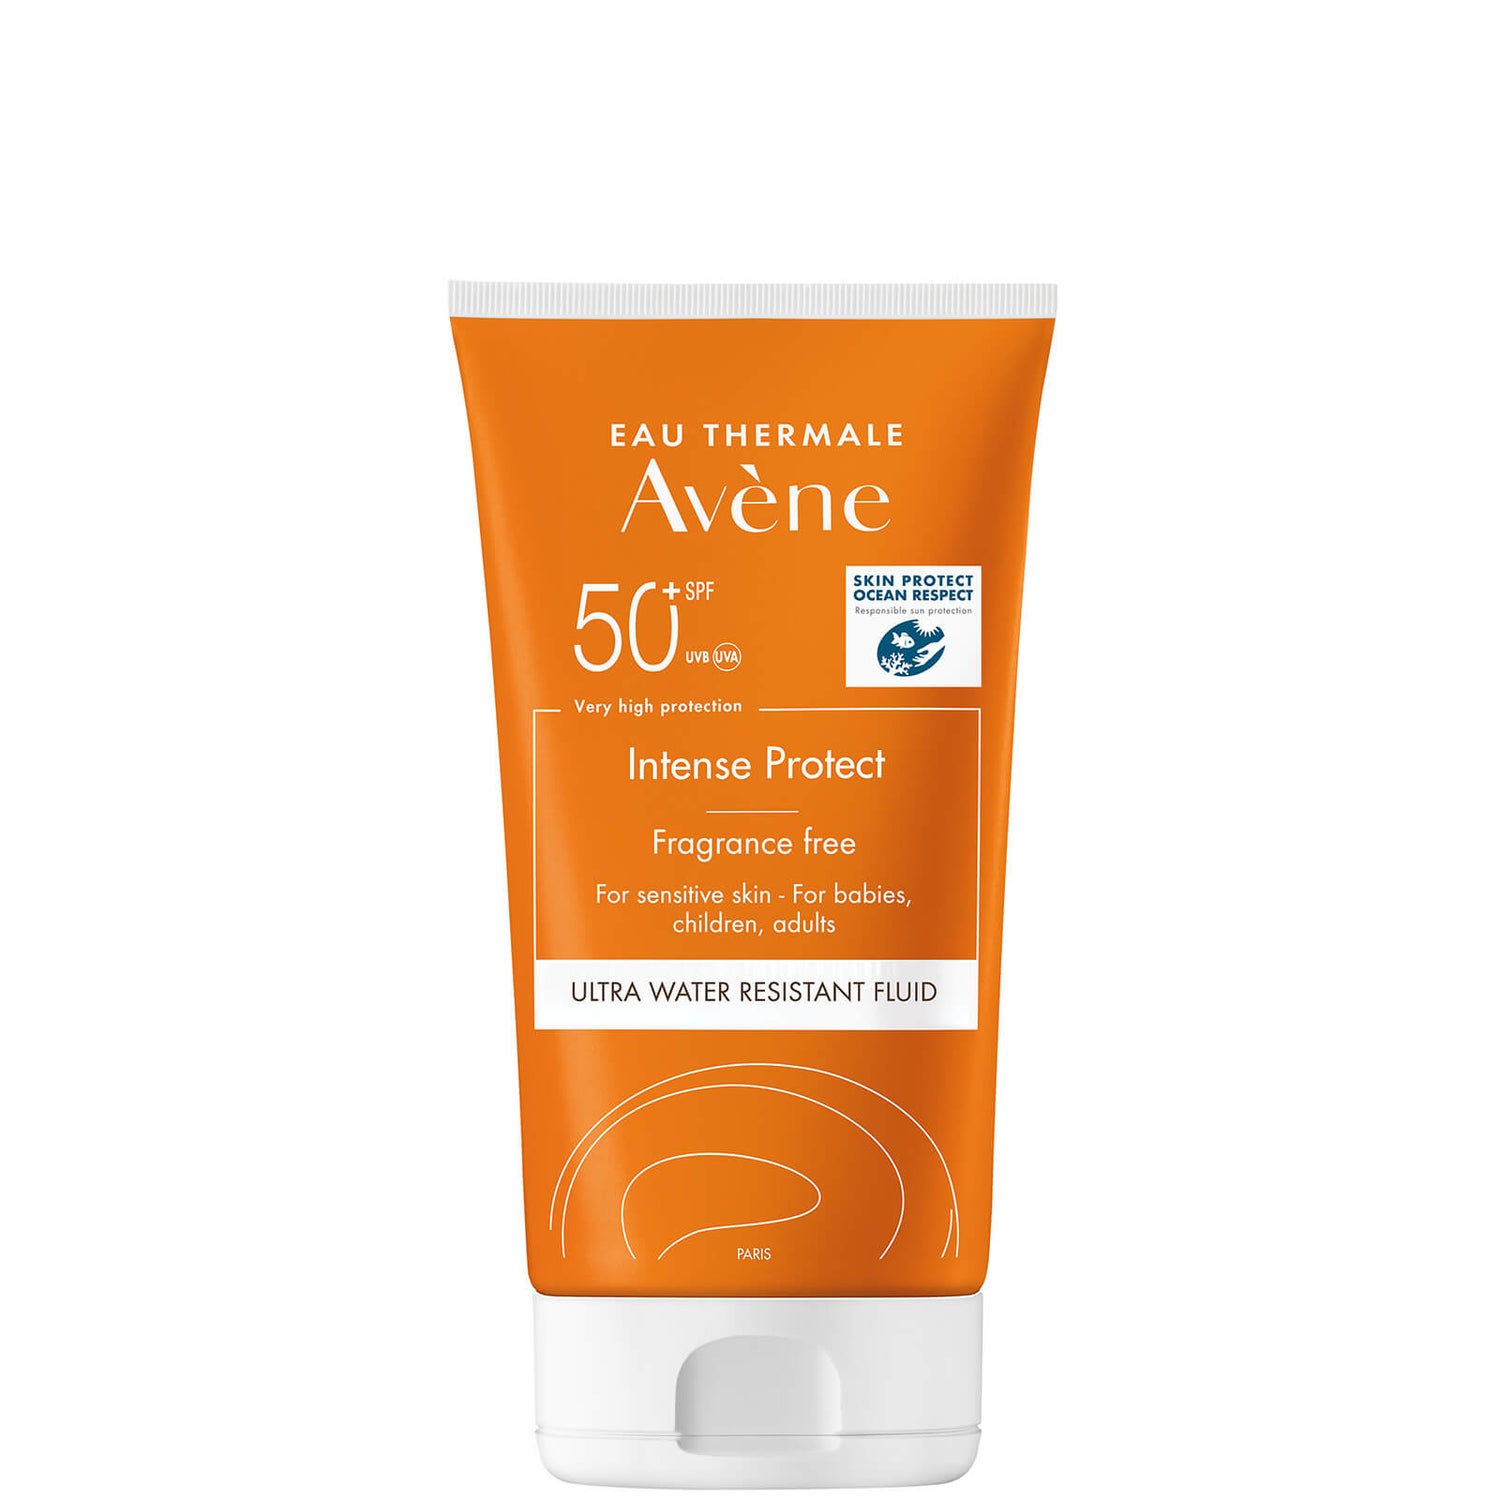 Av?ne Intense Protect SPF50+ Sun Cream for Very Sensitive Skin 150 ml